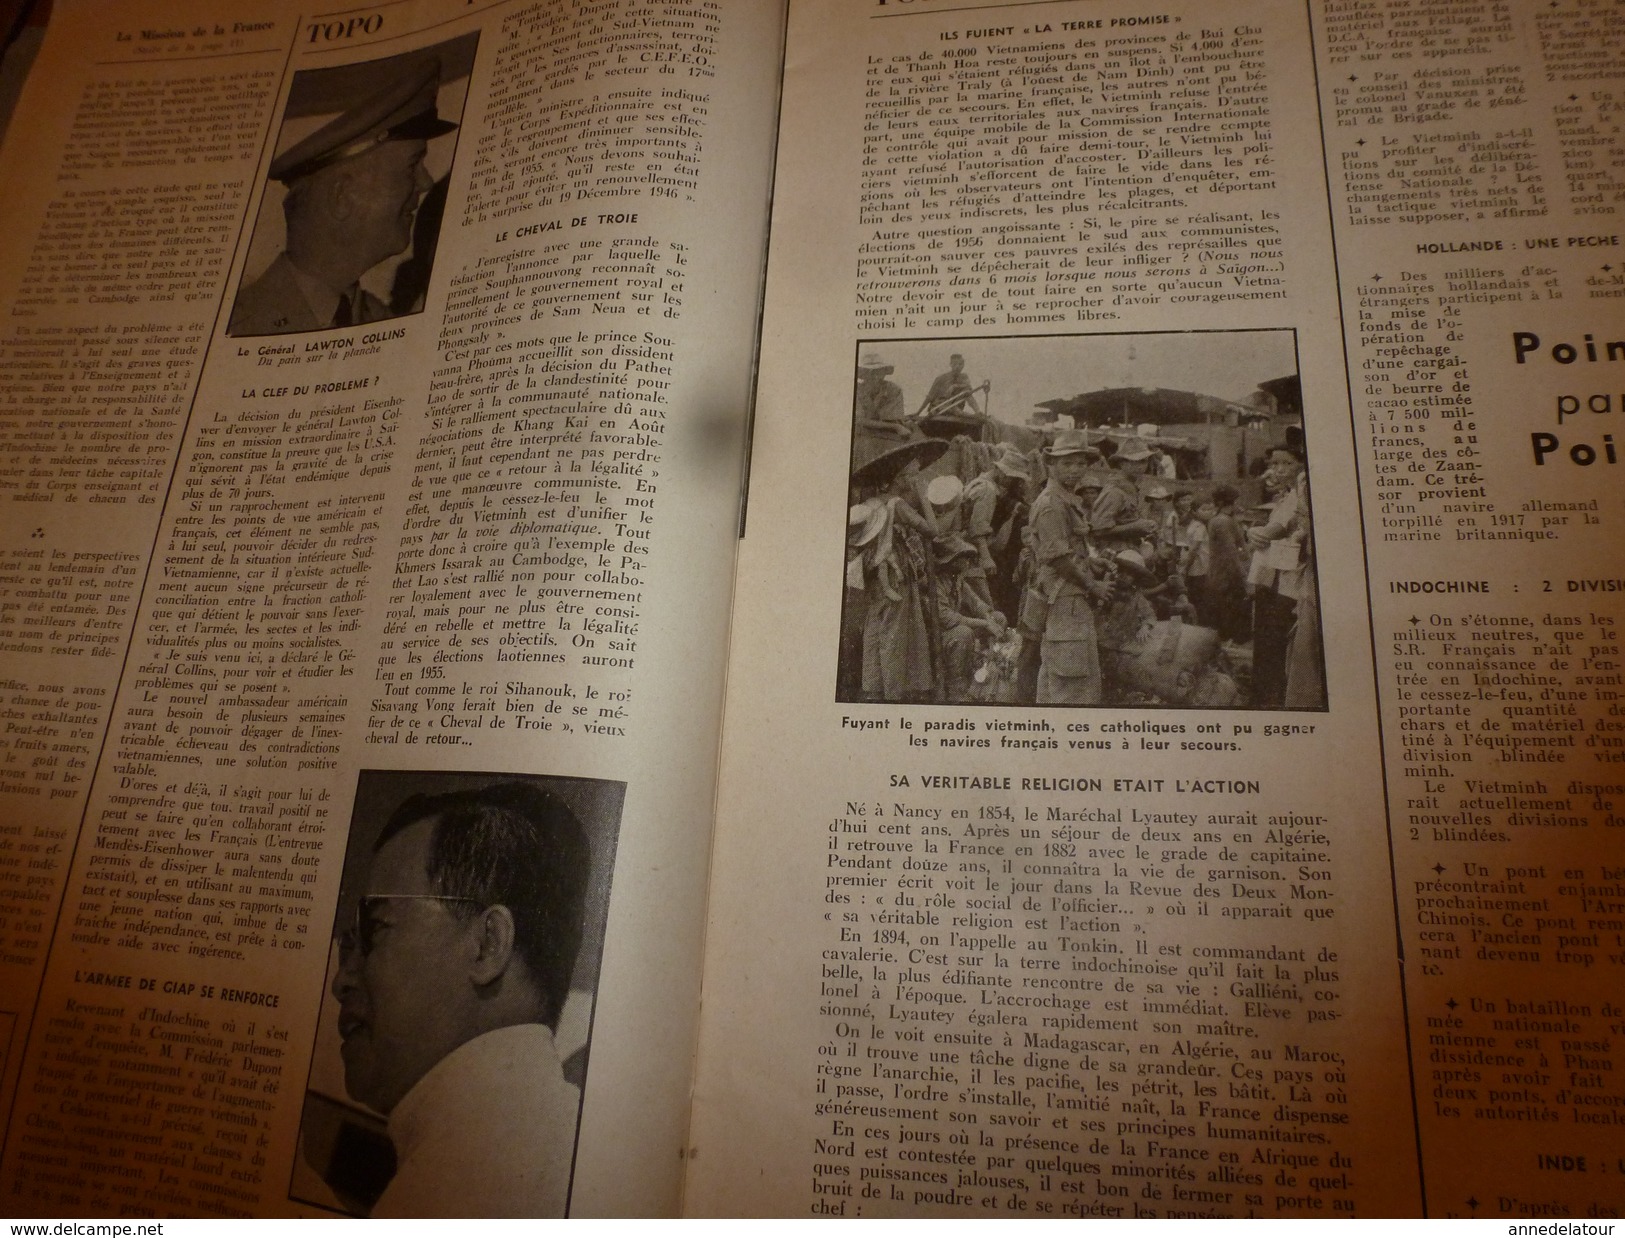 1954 LE COMBATTANT D'INDOCHINE: J'étais Prisonnier Du Vietminh ;Hanoï; Saïgon; Ho Chi Minh; SIAM ;Légion; G. De Villier - Francese